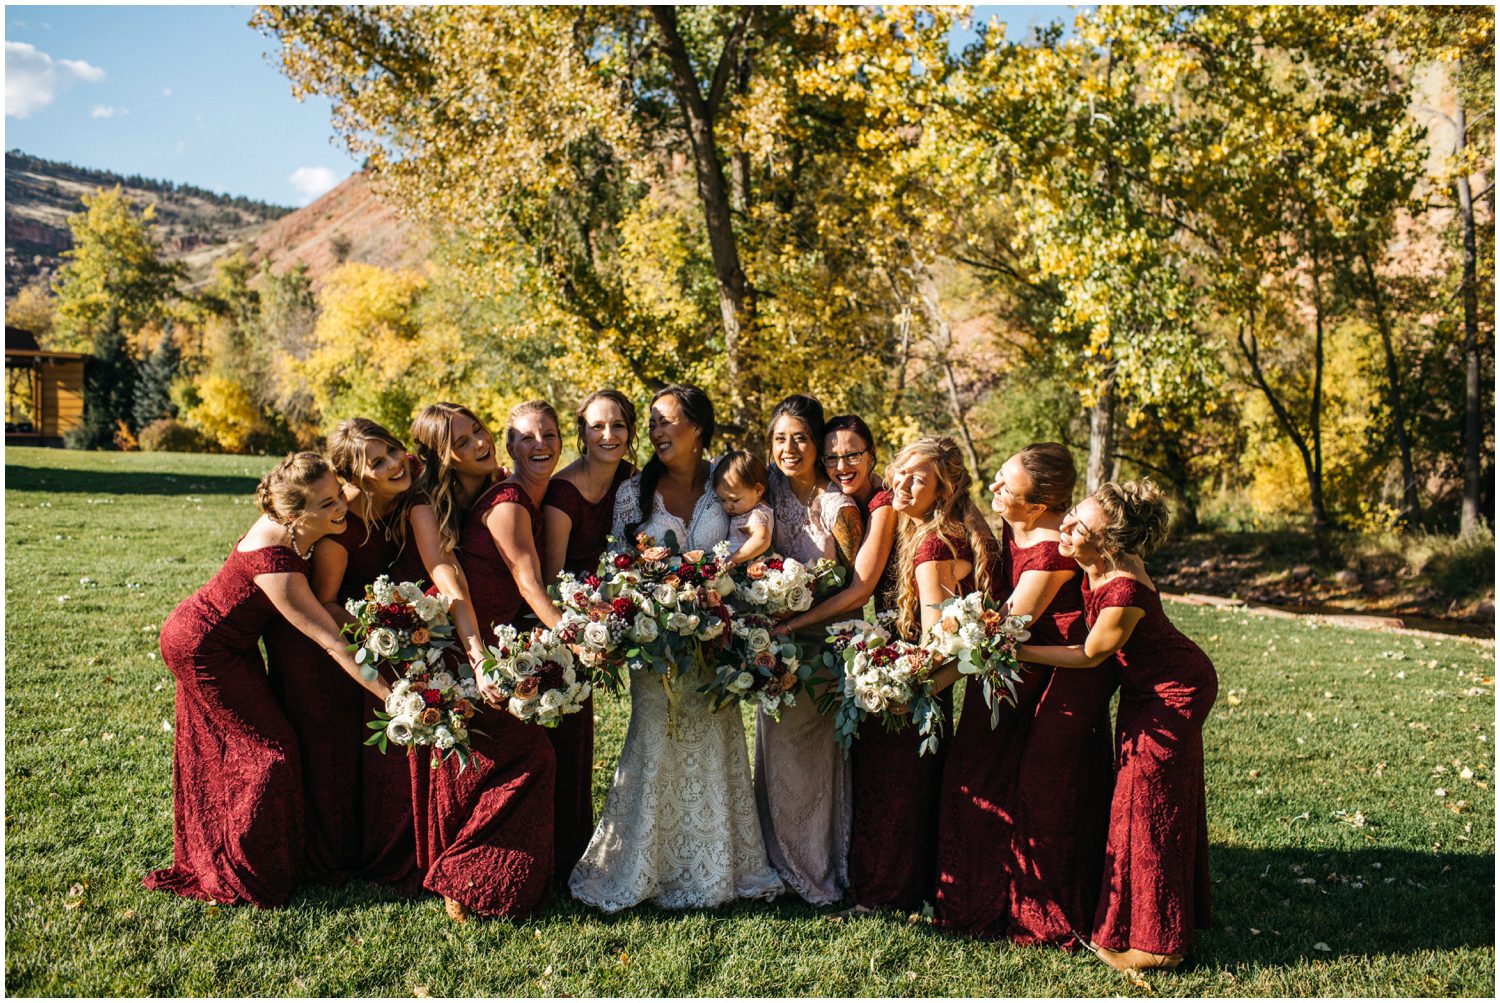 Fun bridesmaids photos, Planet Bluegrass Wedding, Lyons Colorado Wedding, Lace and Lillies, Colorado Wedding Photographer, A Spice of Life, Boho Wedding Inspiration, Burgundy wedding inspiration, Colorado Wedding